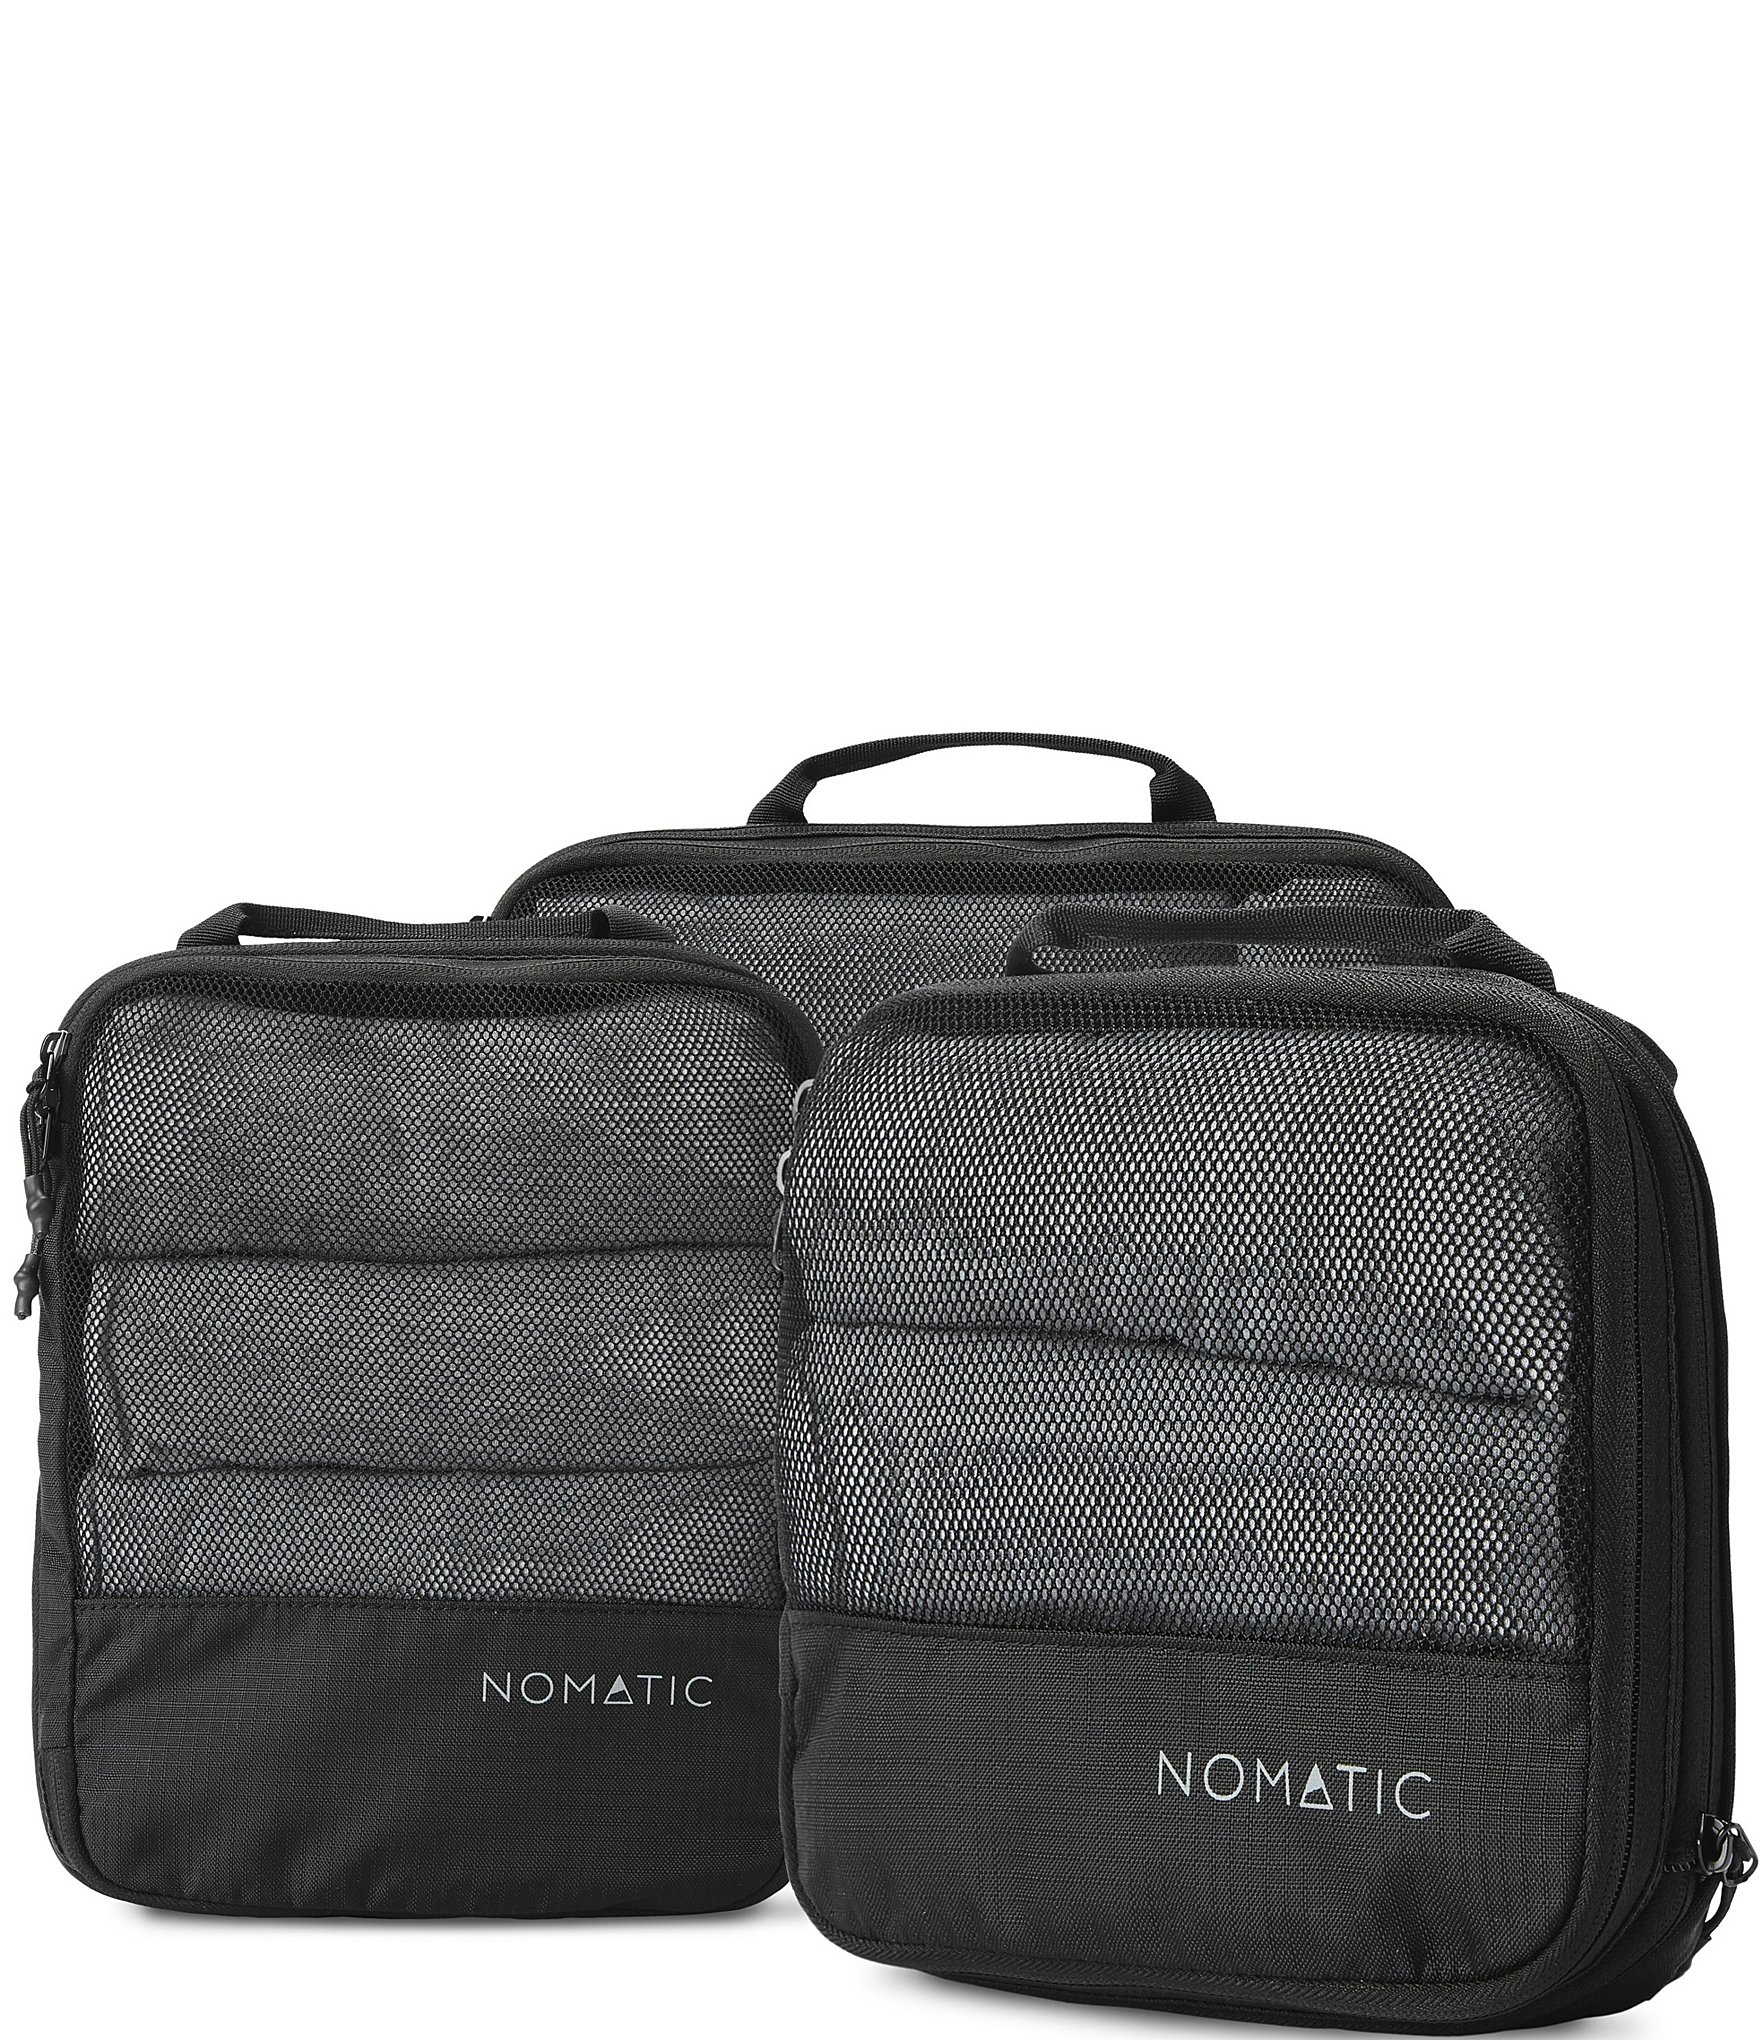 NOMATIC Luggage Organizer Compression Vacuum Bag